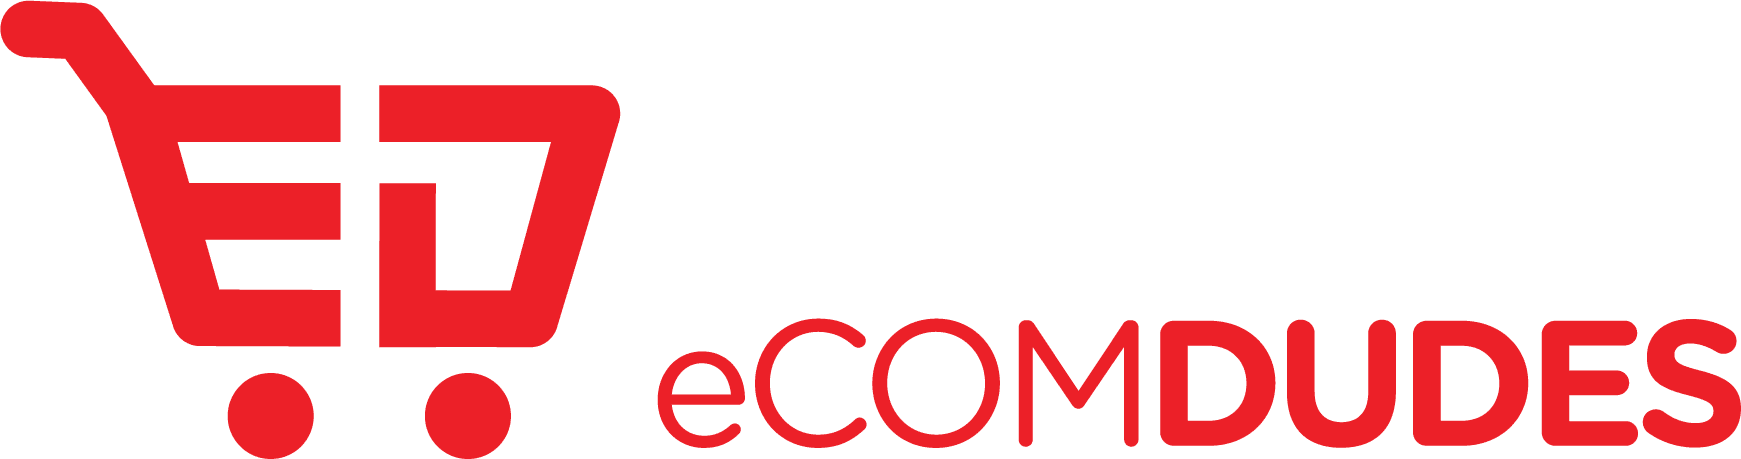 eCom Dudes Academy - Build a massive eCom Empire 